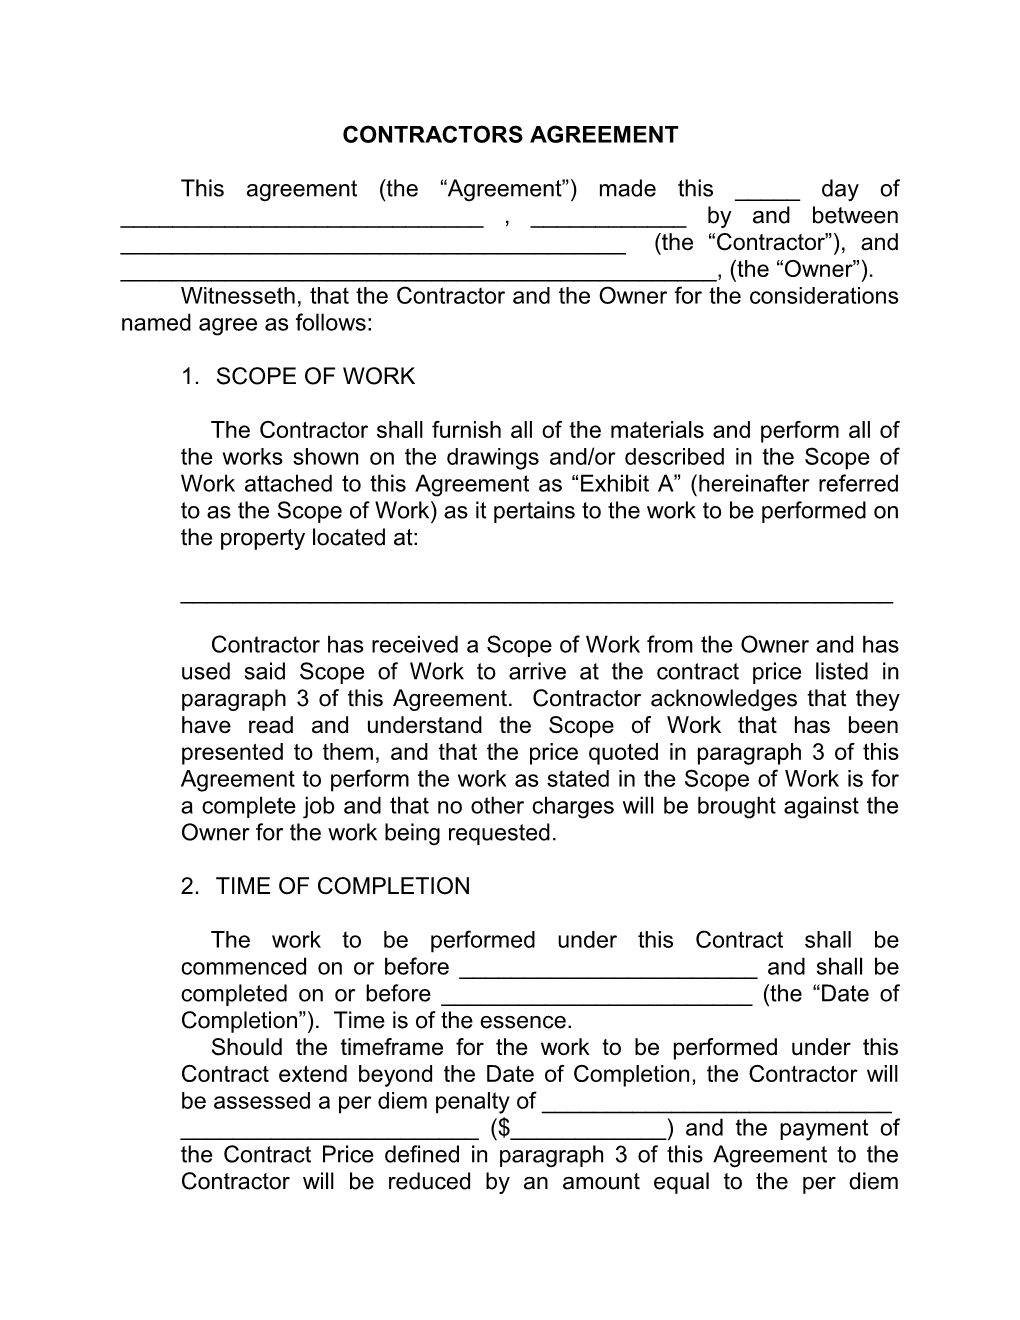 Contractors Agreement